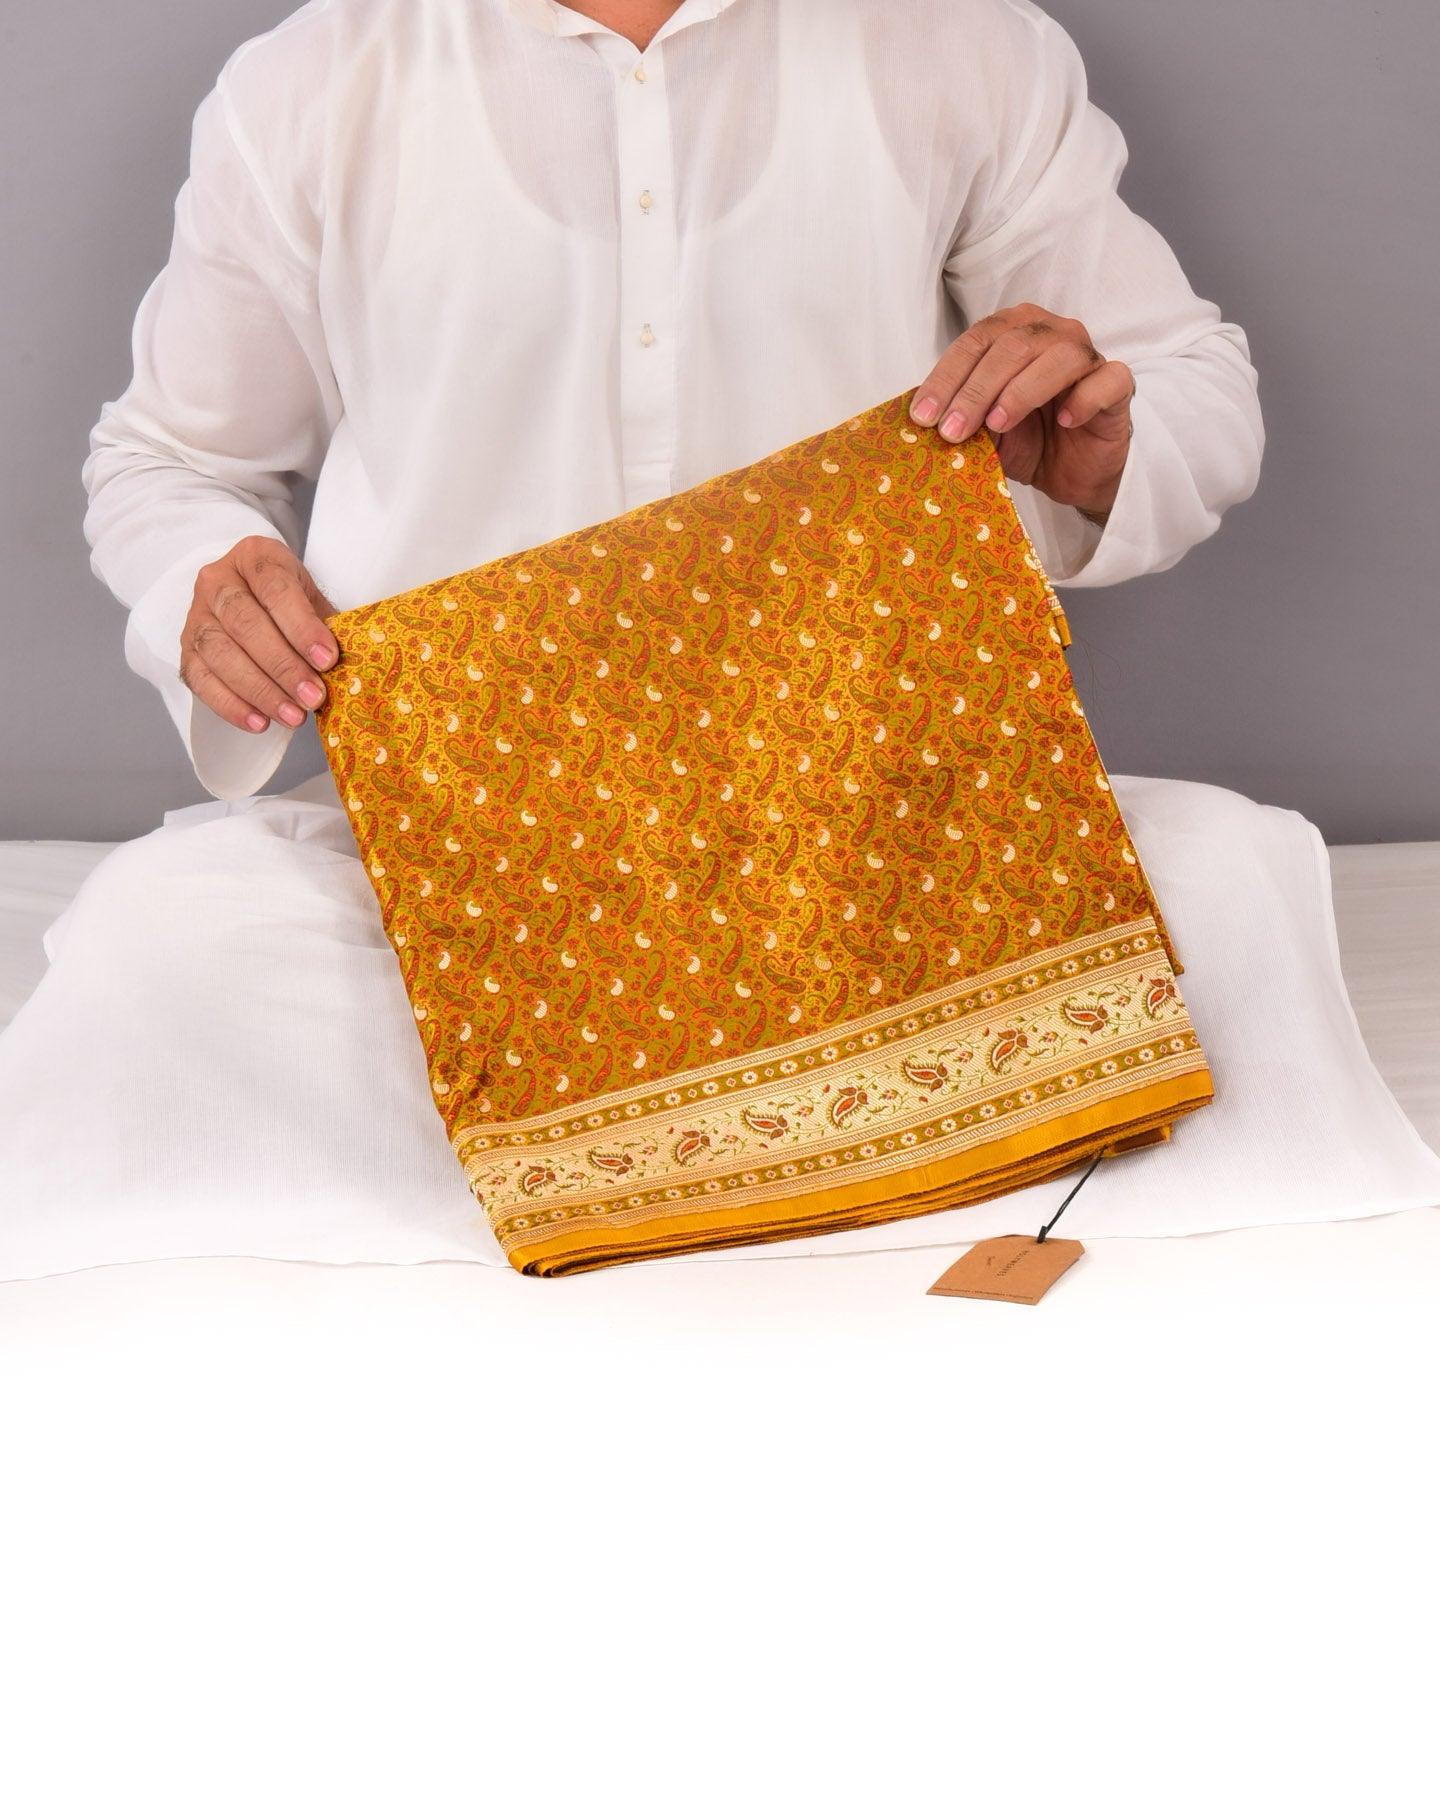 Mustard Yellow Banarasi Tehri Jamawar Brocade Handwoven Katan Silk Saree with Zari Accents - By HolyWeaves, Benares